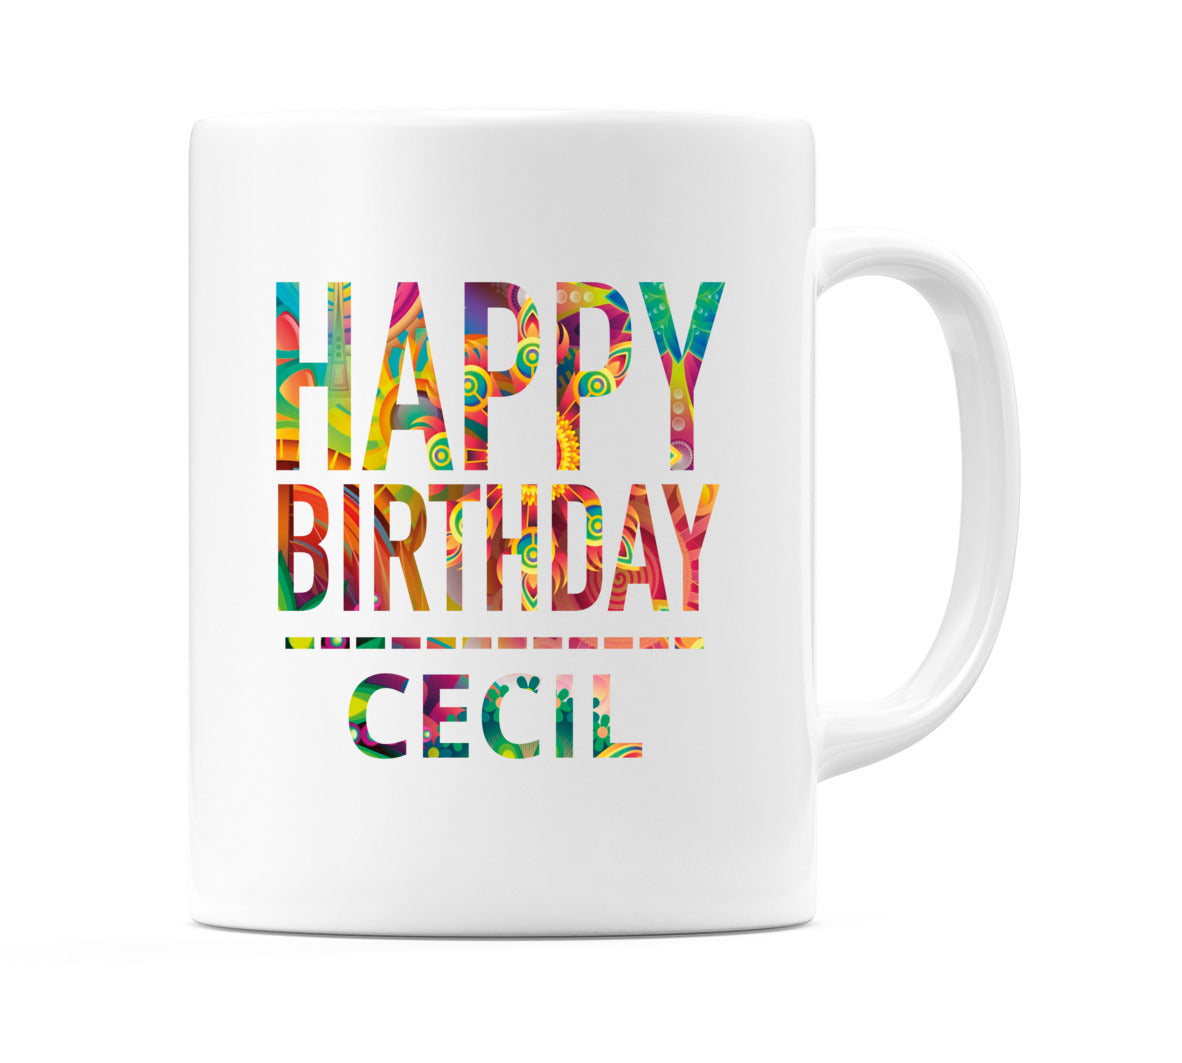 Happy Birthday Cecil (Tie Dye Effect) Mug Cup by WeDoMugs